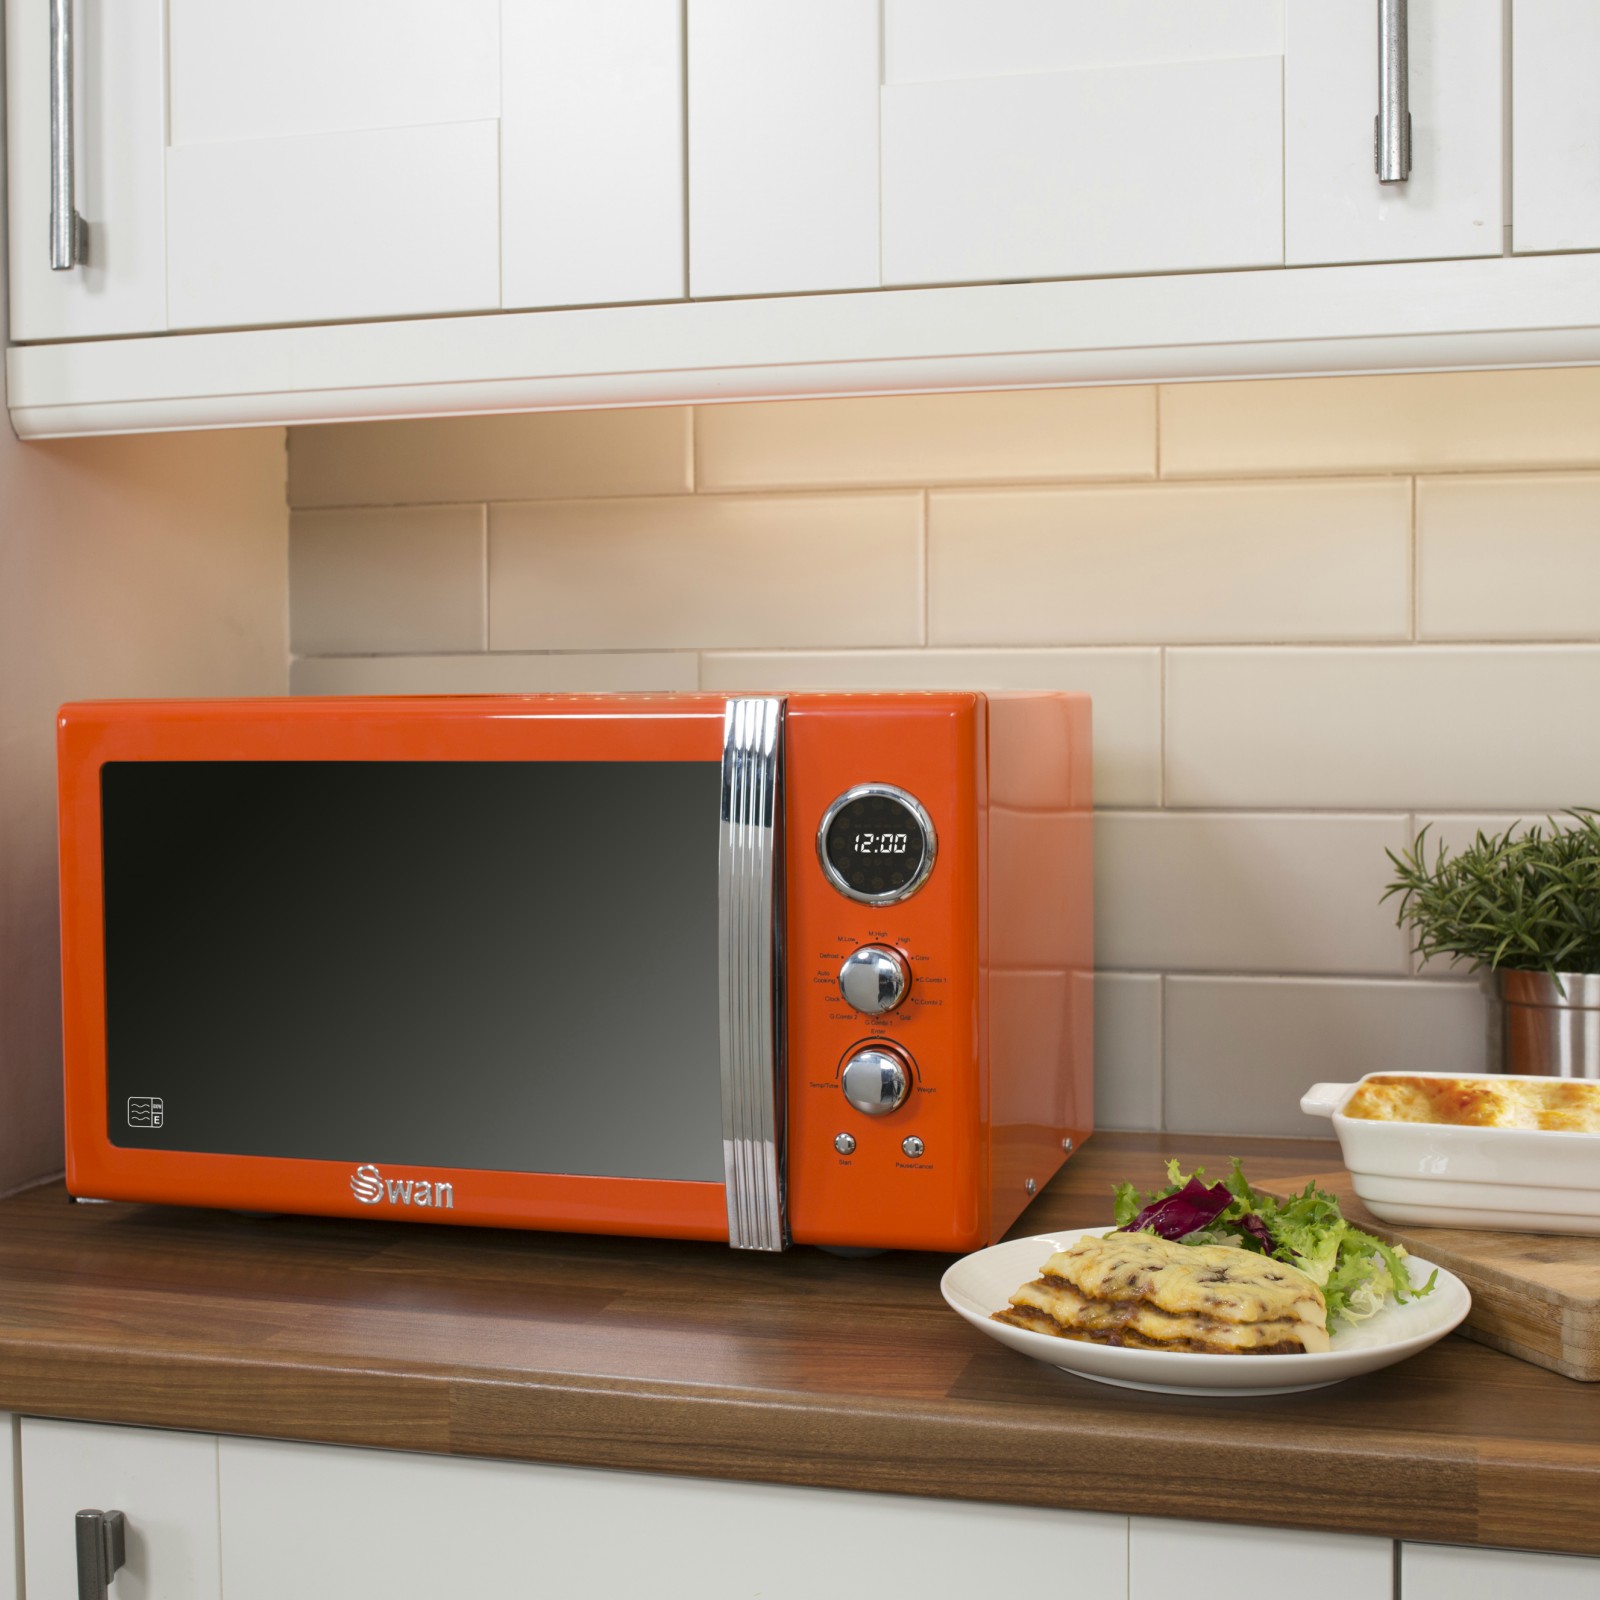 Виды свч. Микроволновая печь Hofmann HMW-720ss. Микроволновая печь Microwave Oven. Микроволновка в интерьере кухни. Микроволновая печь в интерьере кухни.